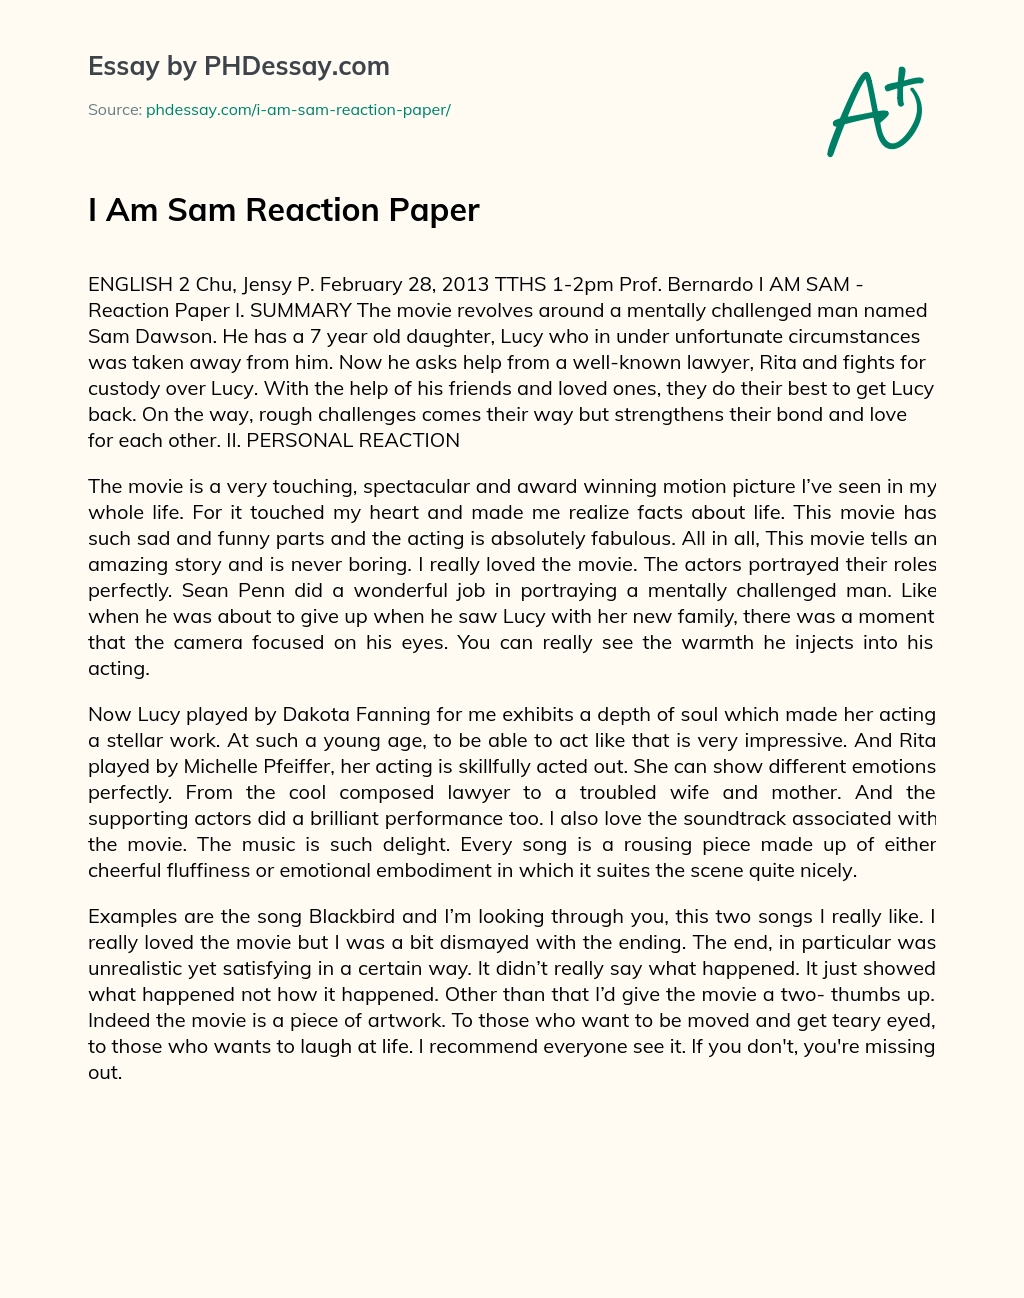 I Am Sam Reaction Paper essay